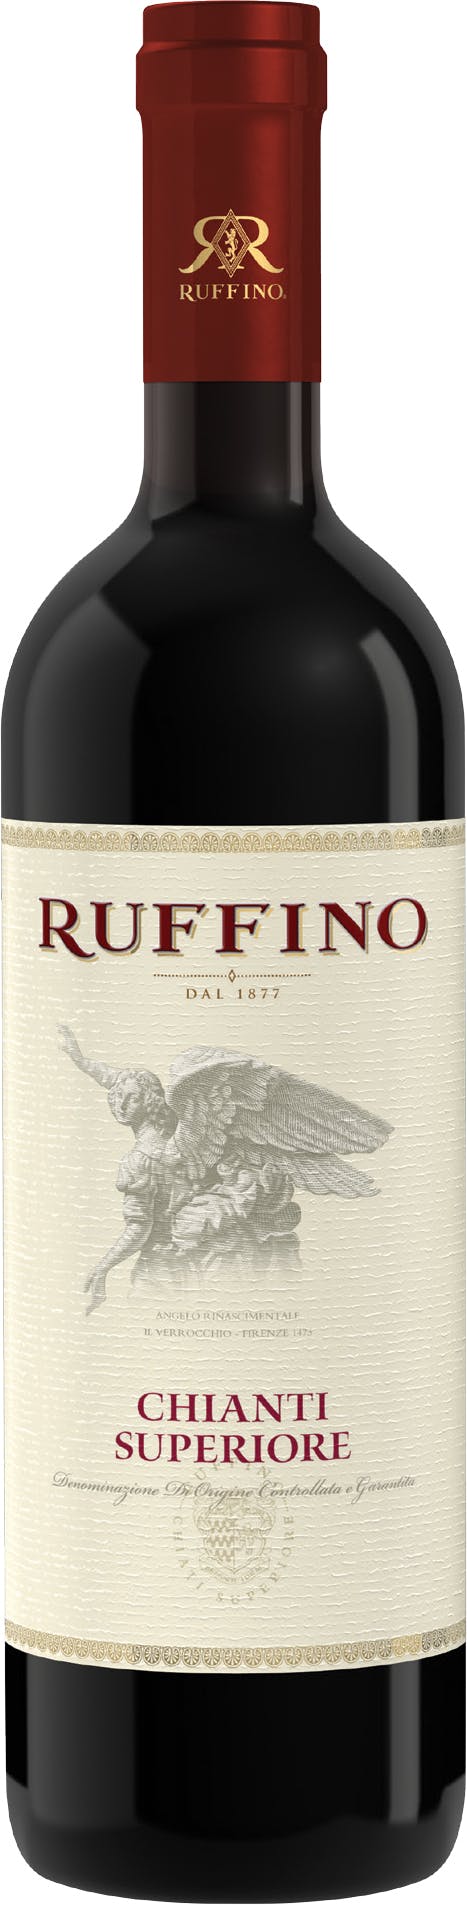 Ruffino Chianti Superiore DOCG 2020 Tuscany (1x75cl) - TwoMoreGlasses.com